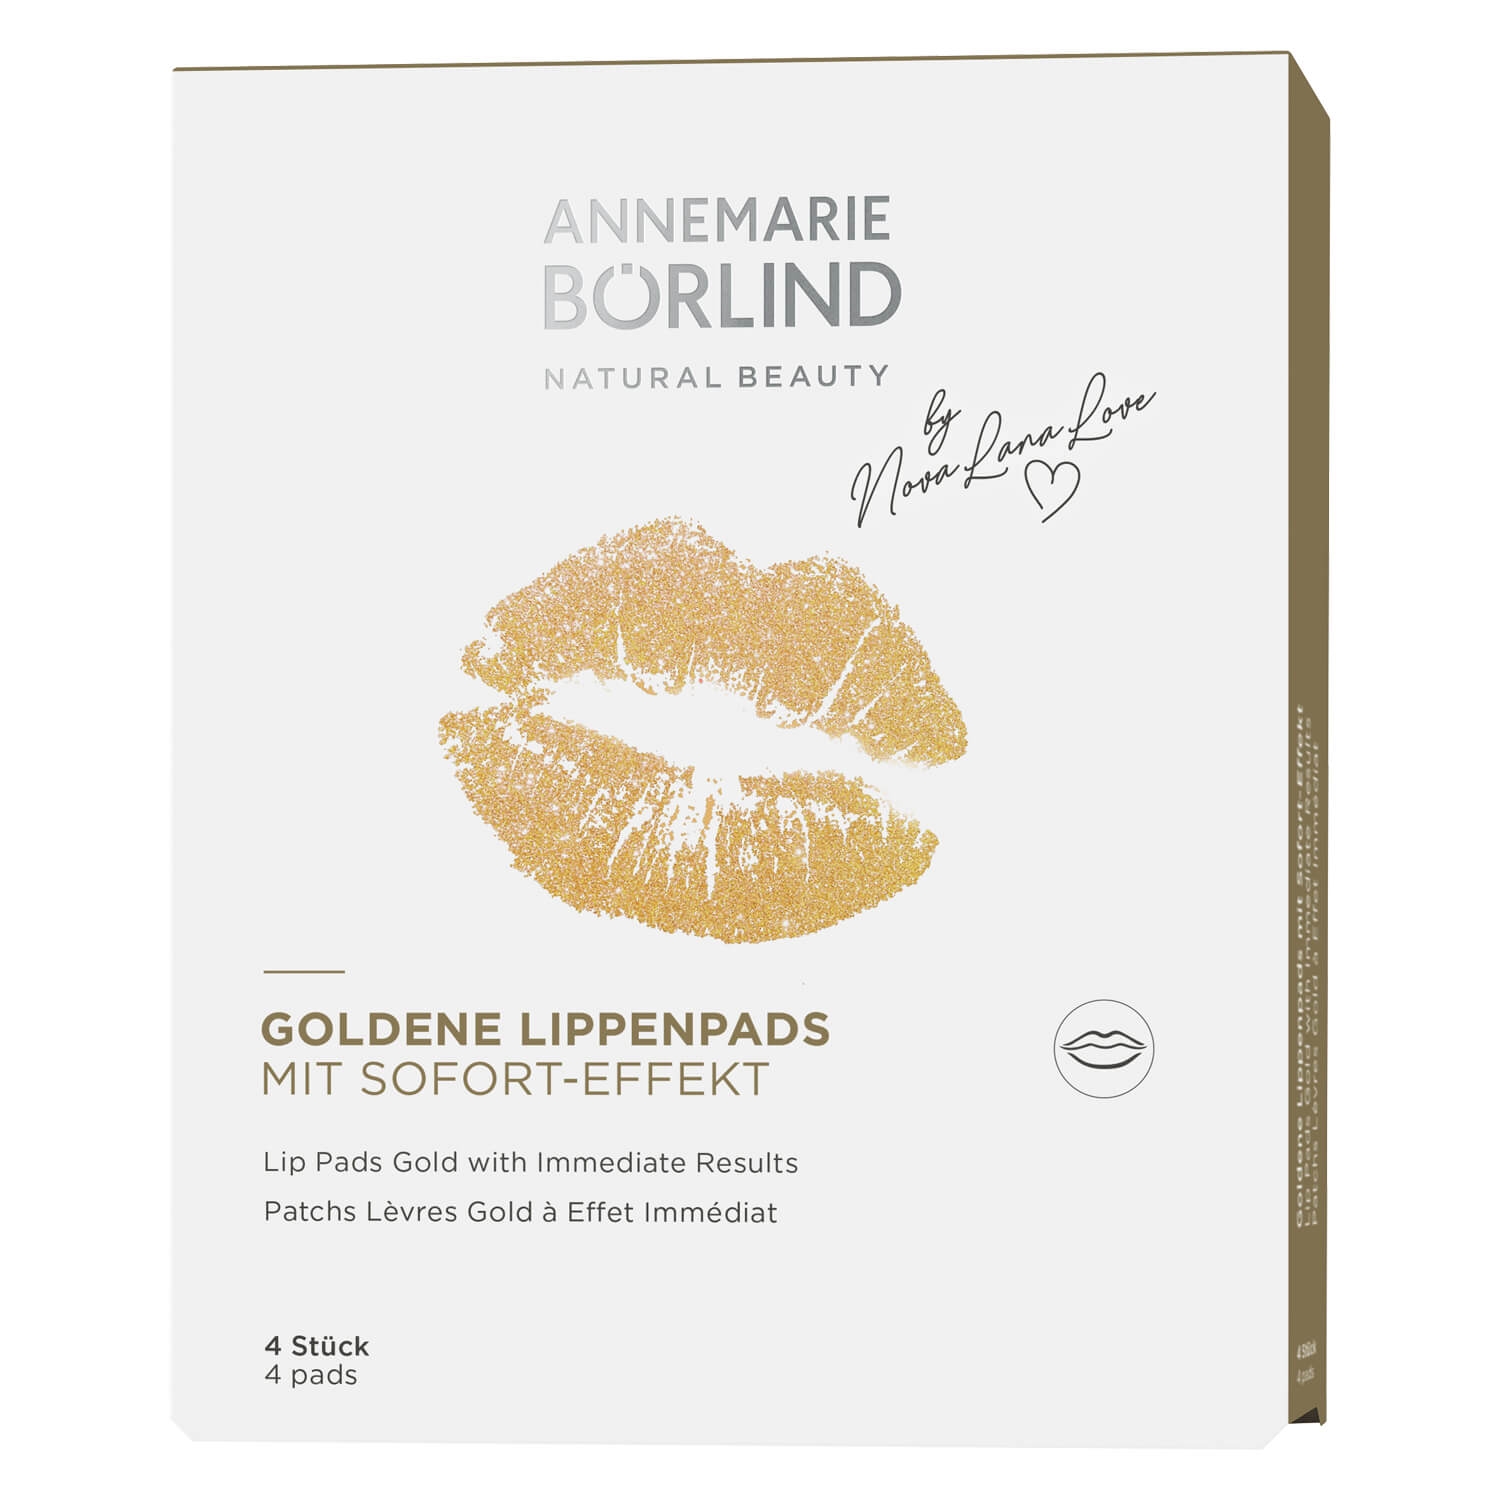 Produktbild von Annemarie Börlind Masks - Goldene Lippenpads mit Sofort-Effekt